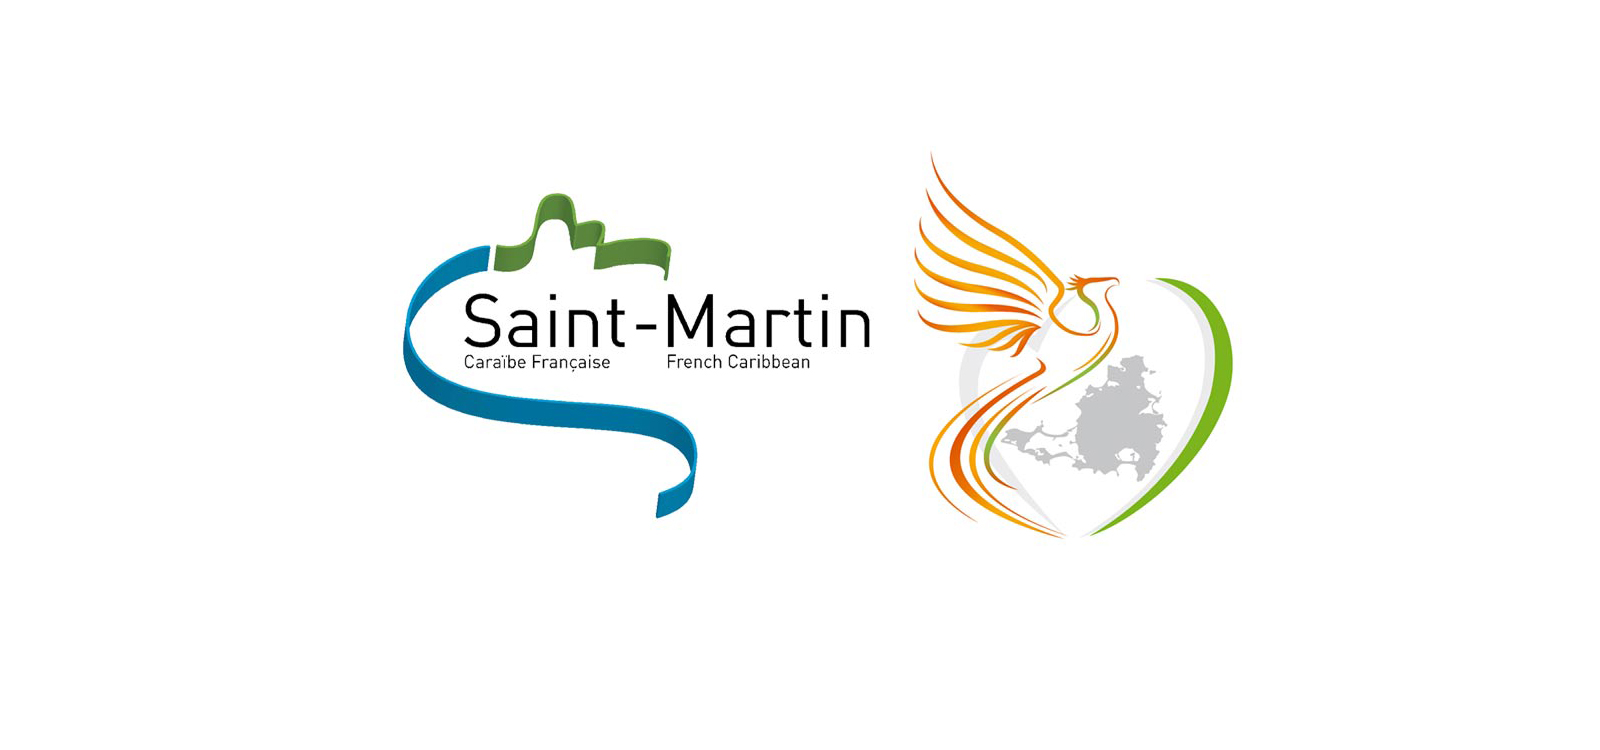 Organisation de la Collectivit de Saint-Martin dans le cadre des mesures de lutte contre le coronavirus COVID-19 instaures sur le territoire